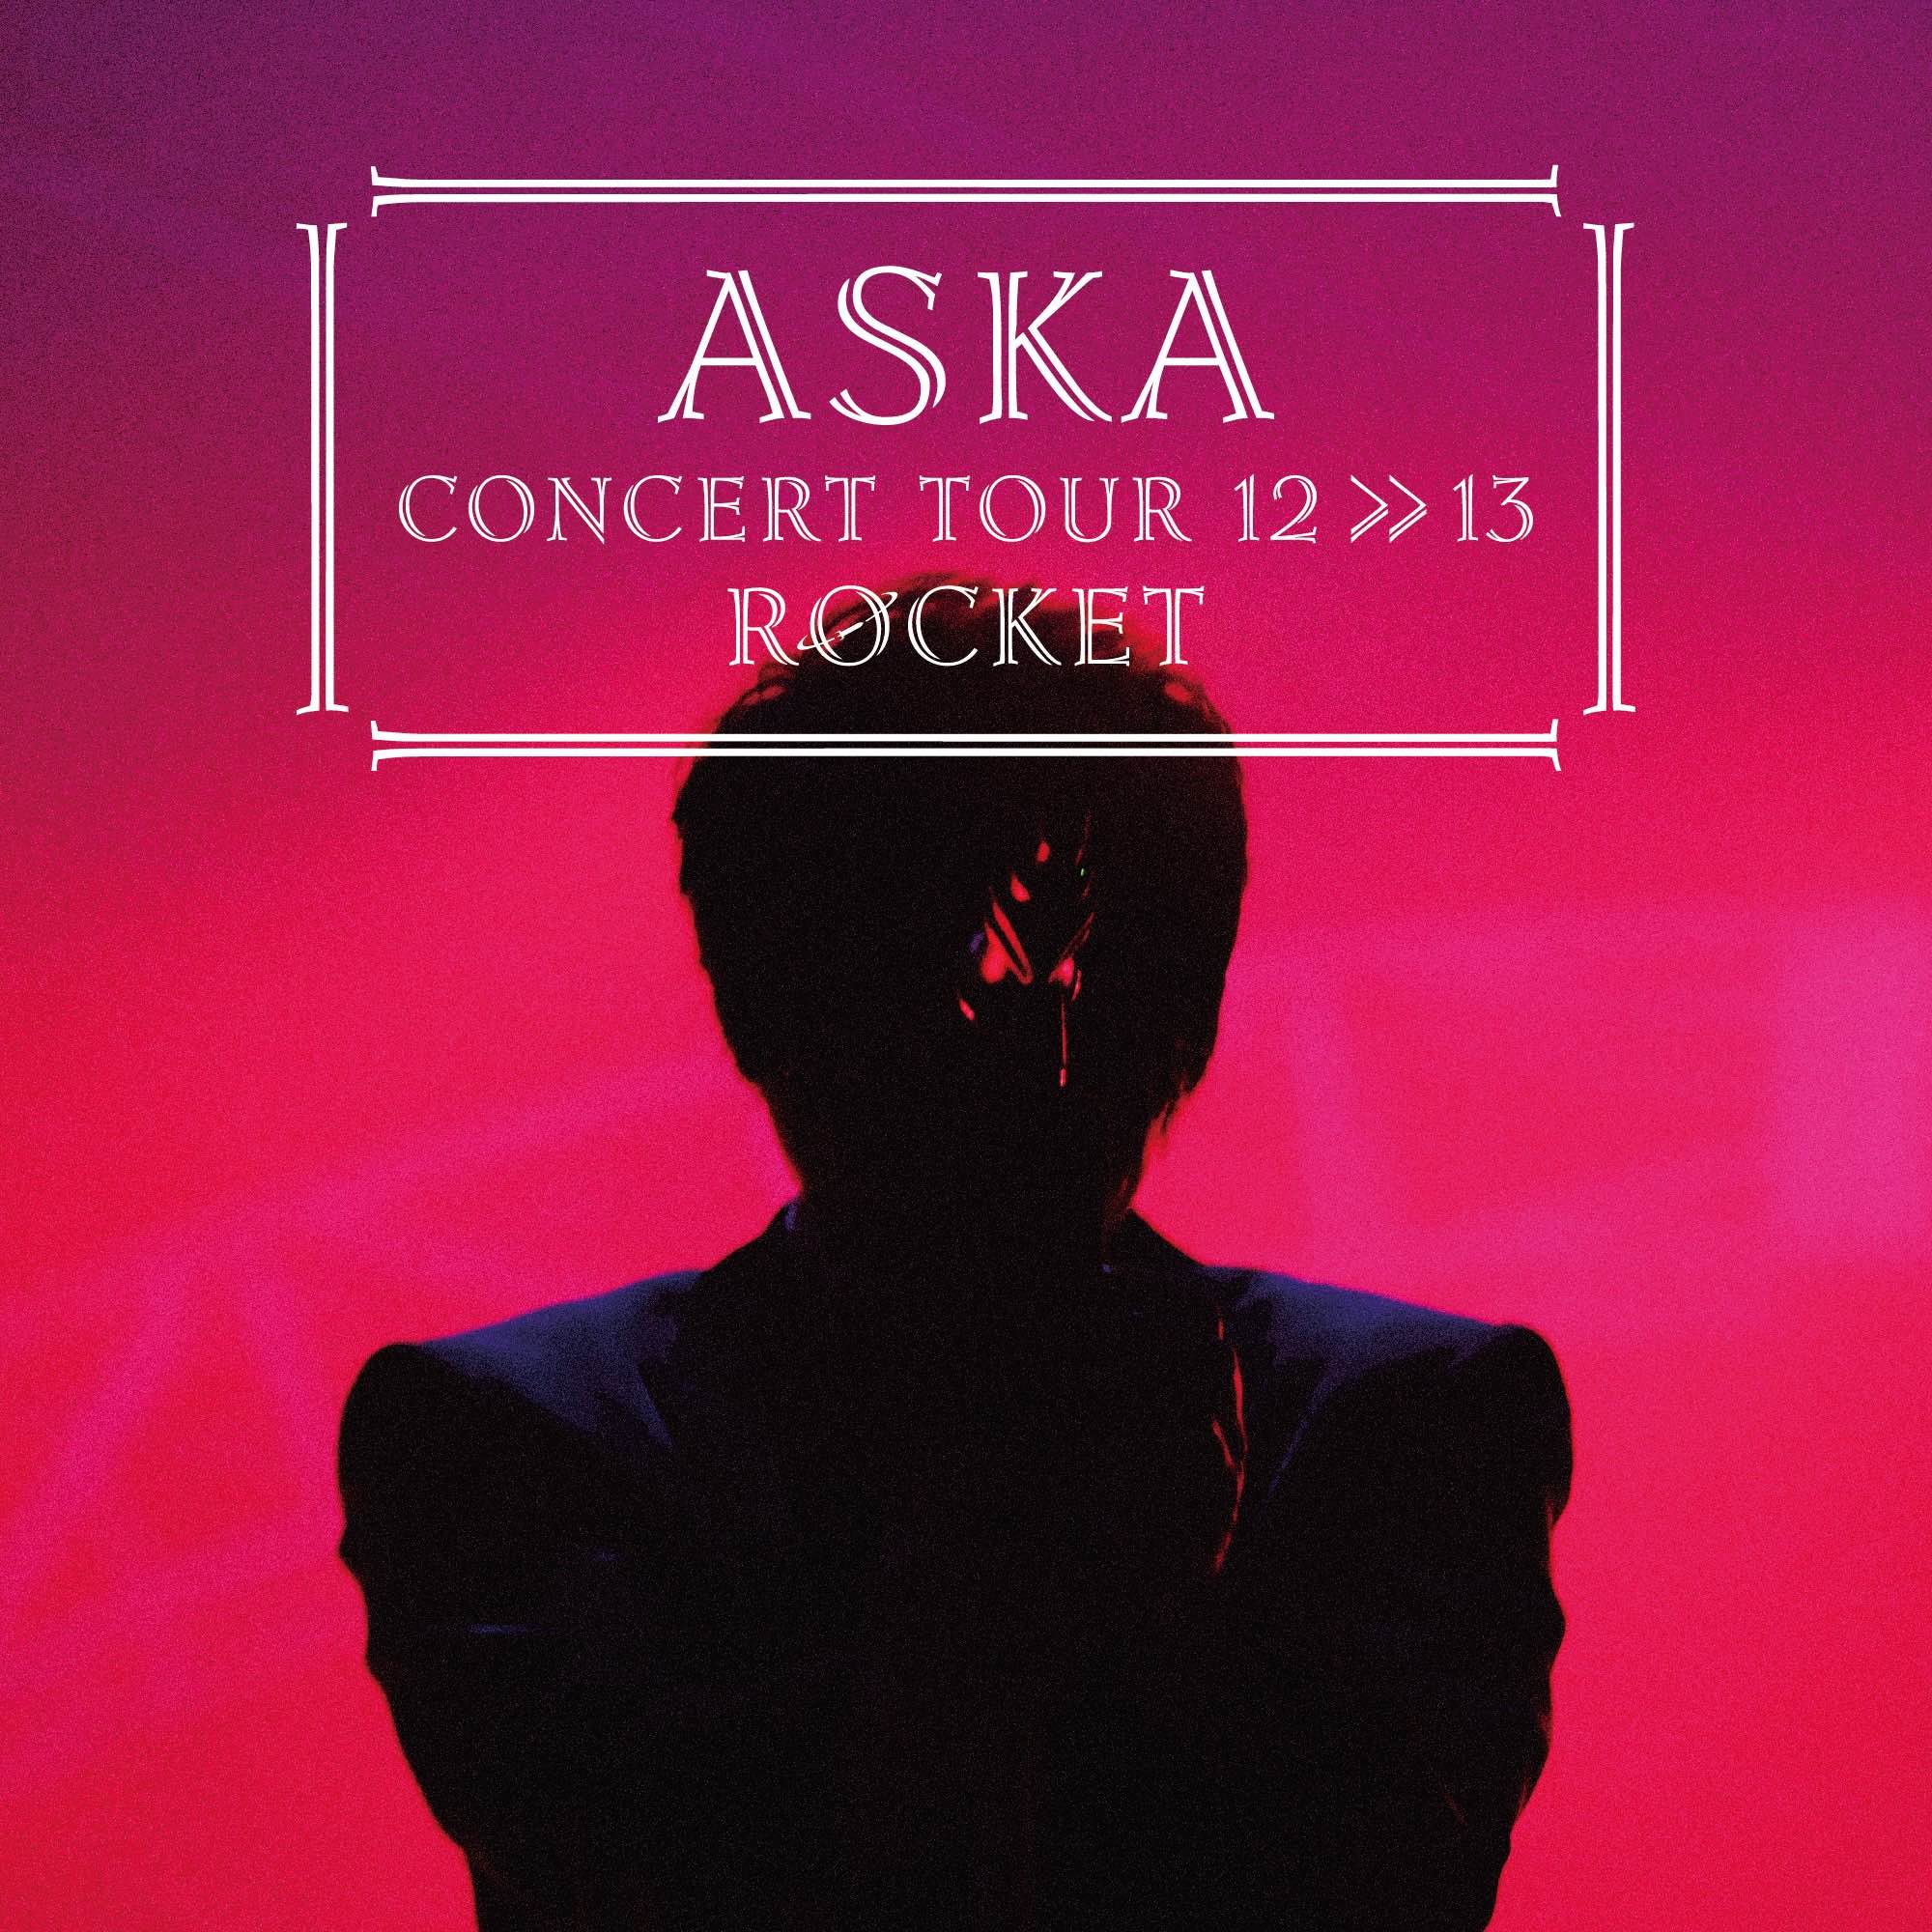 ASKA CONCERT TOUR 12>>13 ROCKET【Blu-ray】